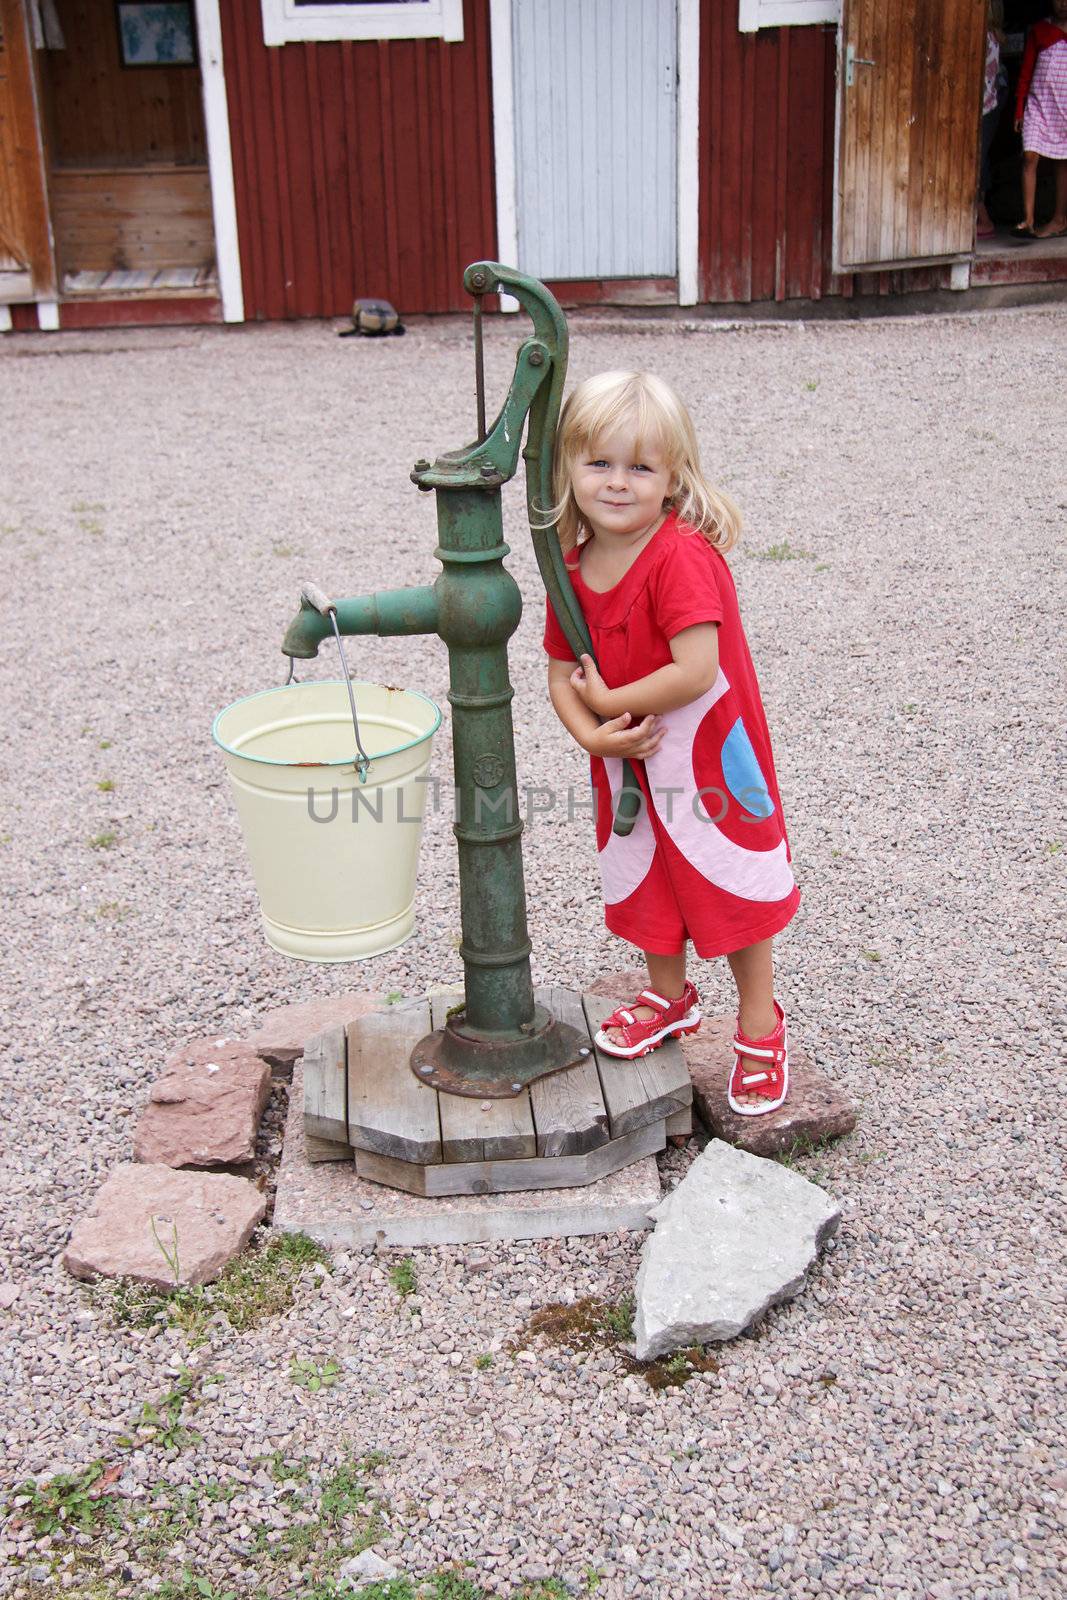 A cute blonde little girl standing next to a waterpump at an outdoor museum